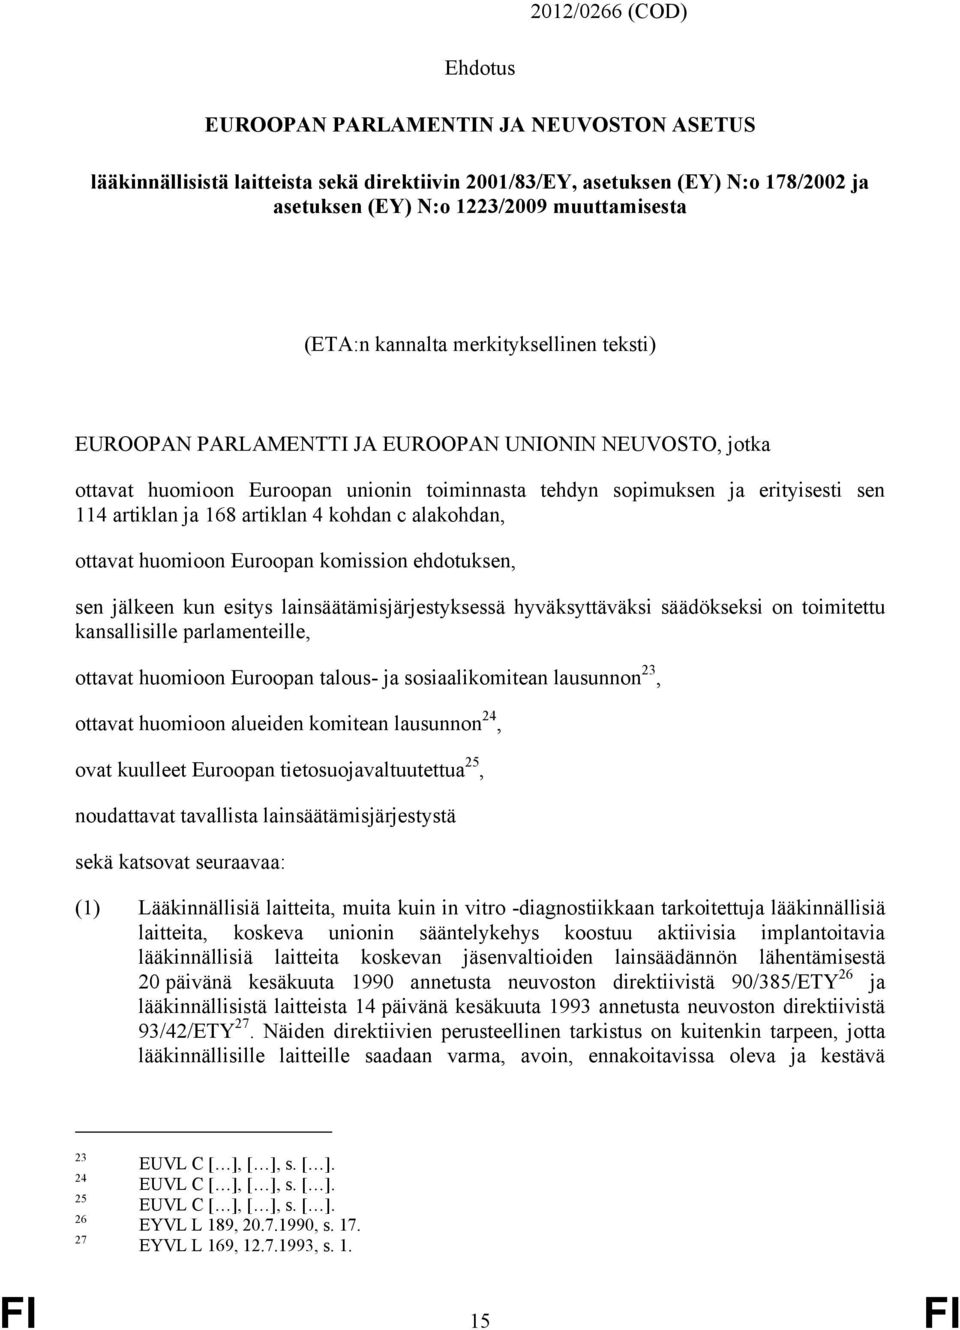 168 artiklan 4 kohdan c alakohdan, ottavat huomioon Euroopan komission ehdotuksen, sen jälkeen kun esitys lainsäätämisjärjestyksessä hyväksyttäväksi säädökseksi on toimitettu kansallisille